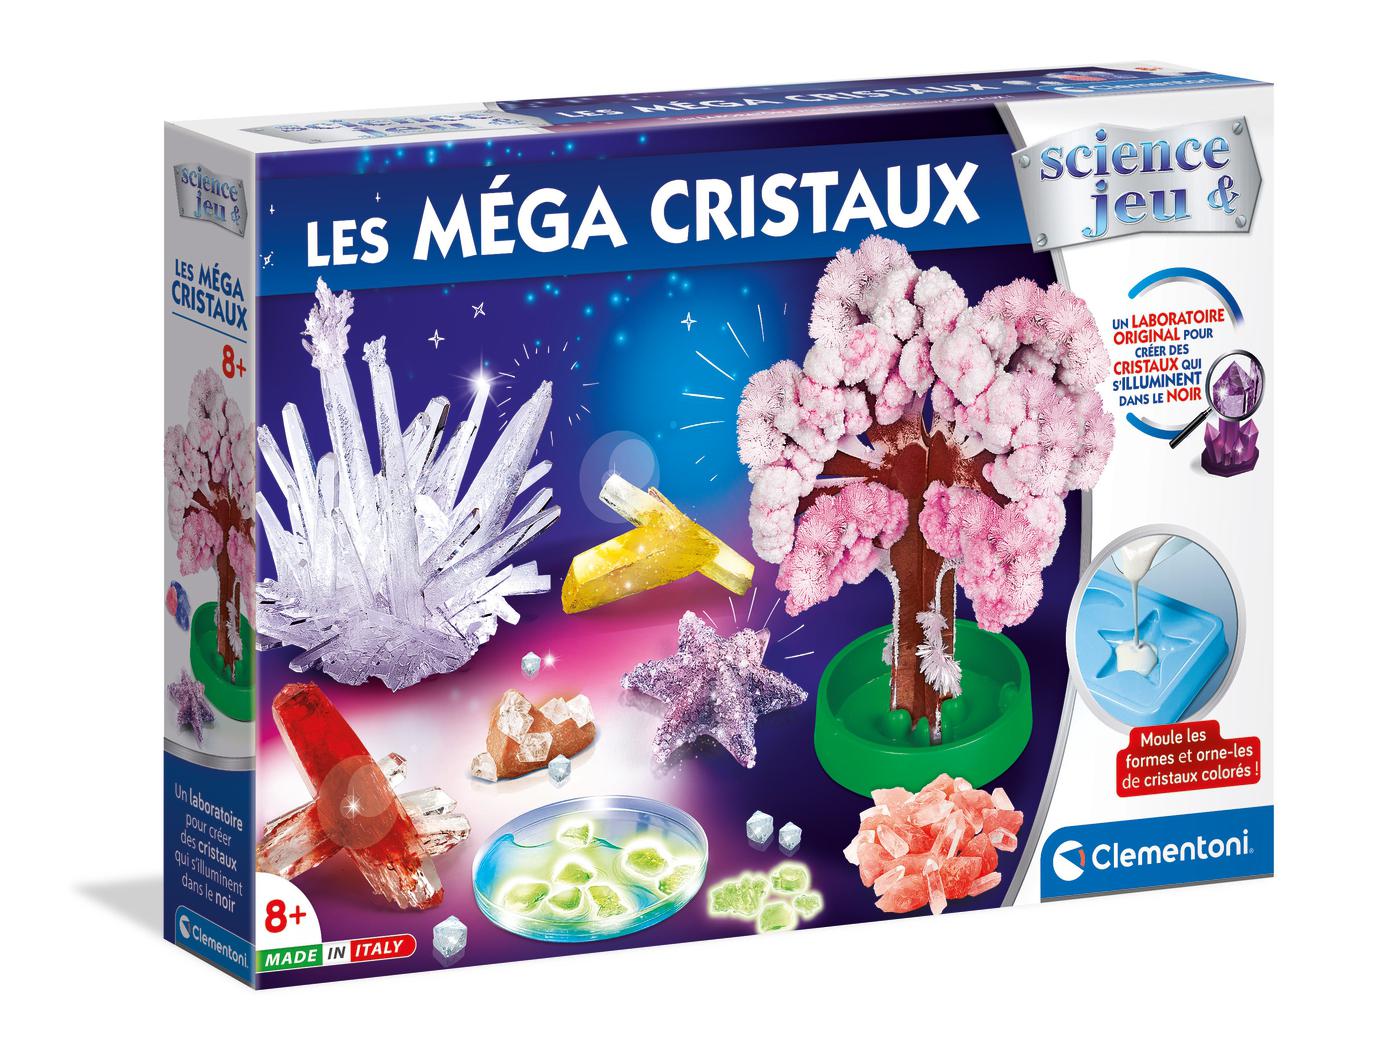 Clementoni - Science et jeu laboratoire, Les méga cristaux